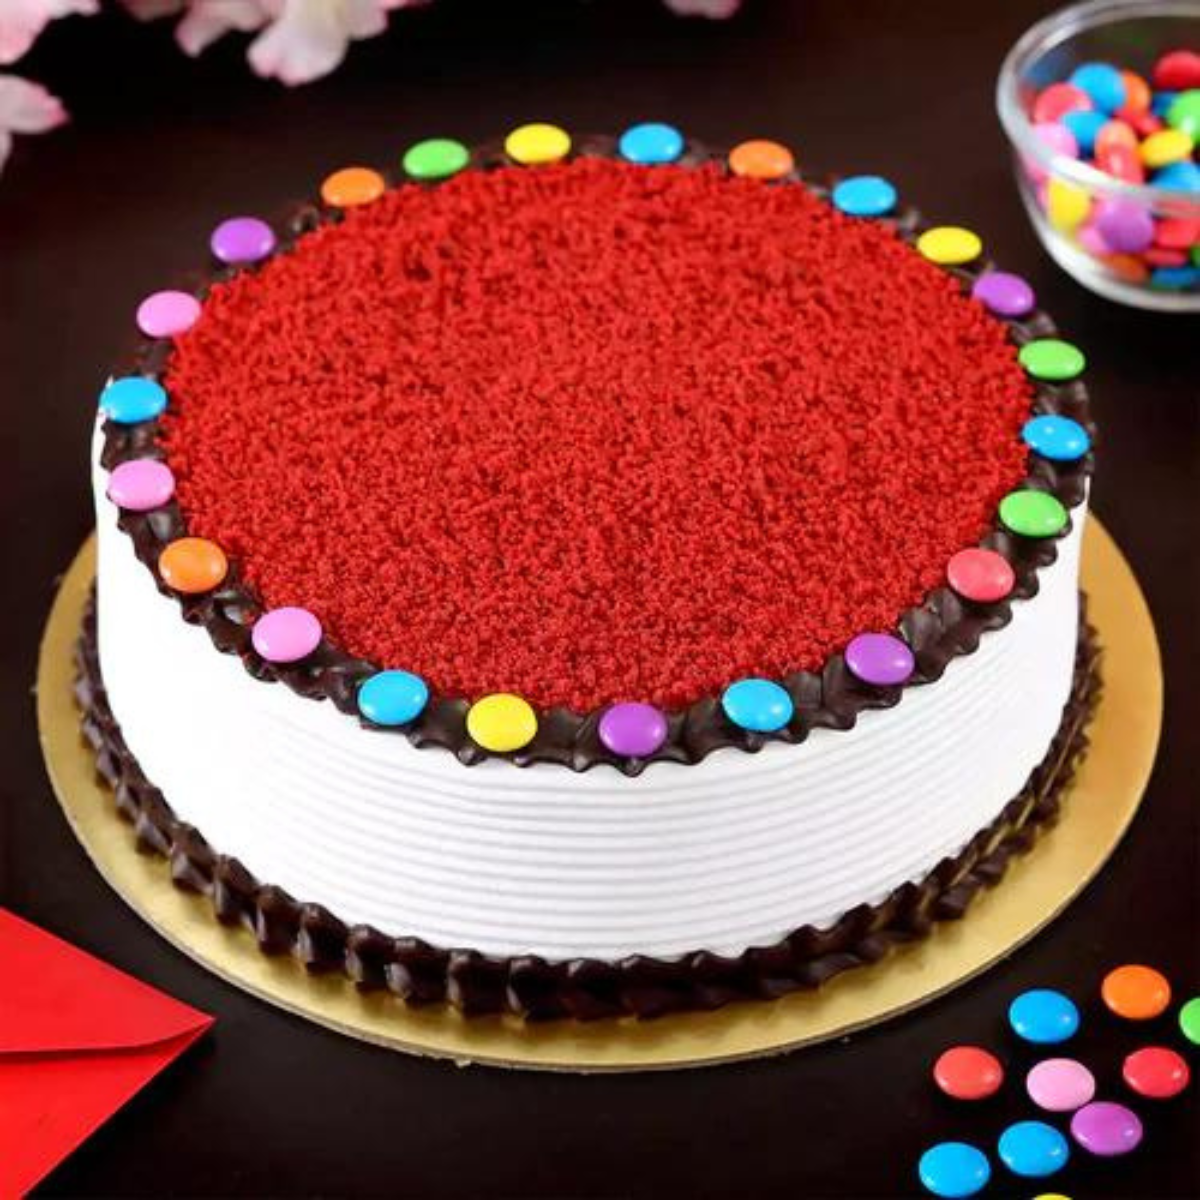 Red Velvet Cake with Gems